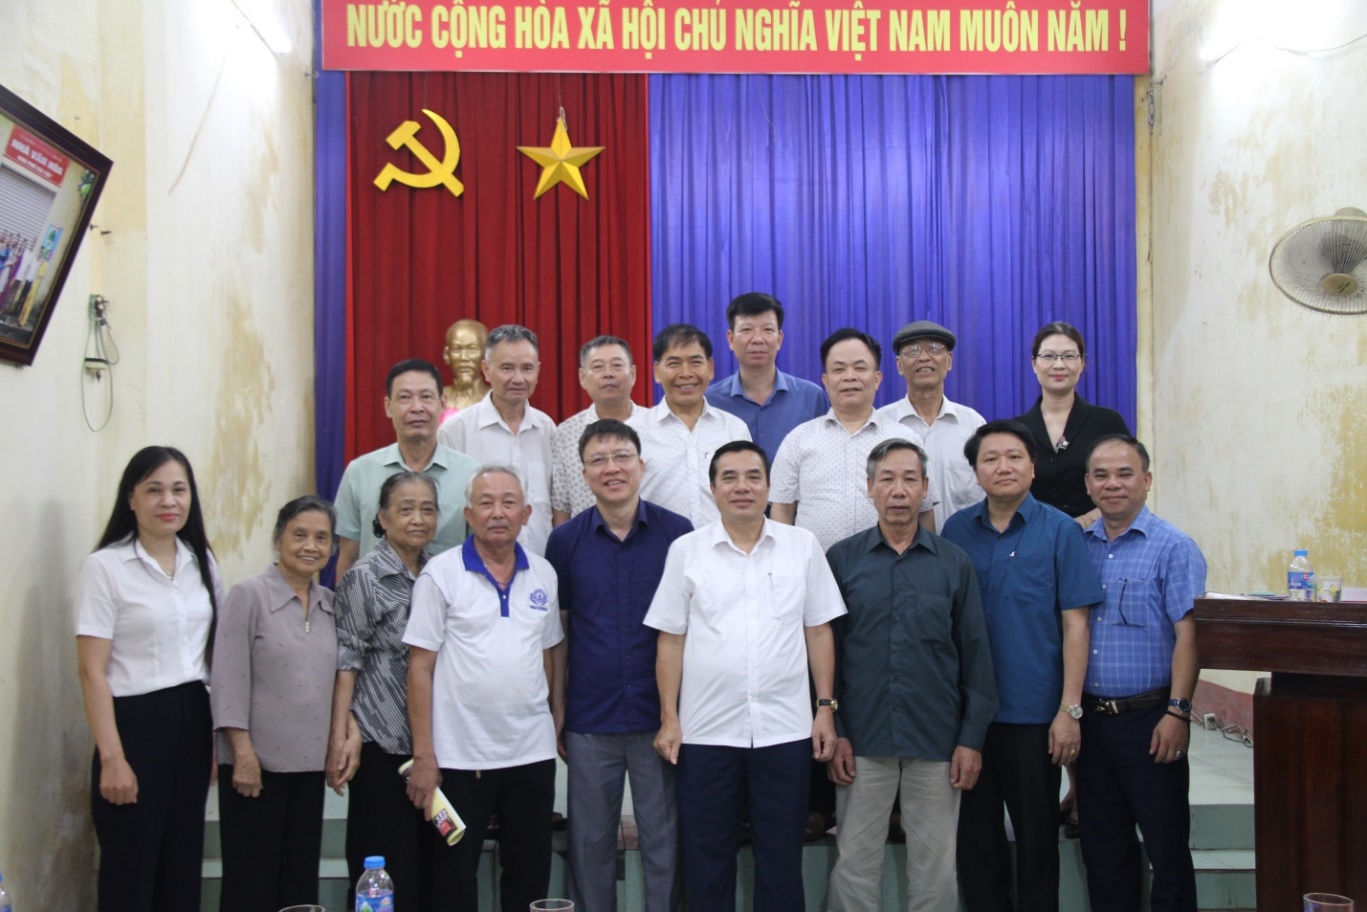 Đồng chí Bí thư Thành ủy Phạm Huy Bình  dự sinh hoạt Chi bộ khu phố Bãi Sậy, phường Minh Khai